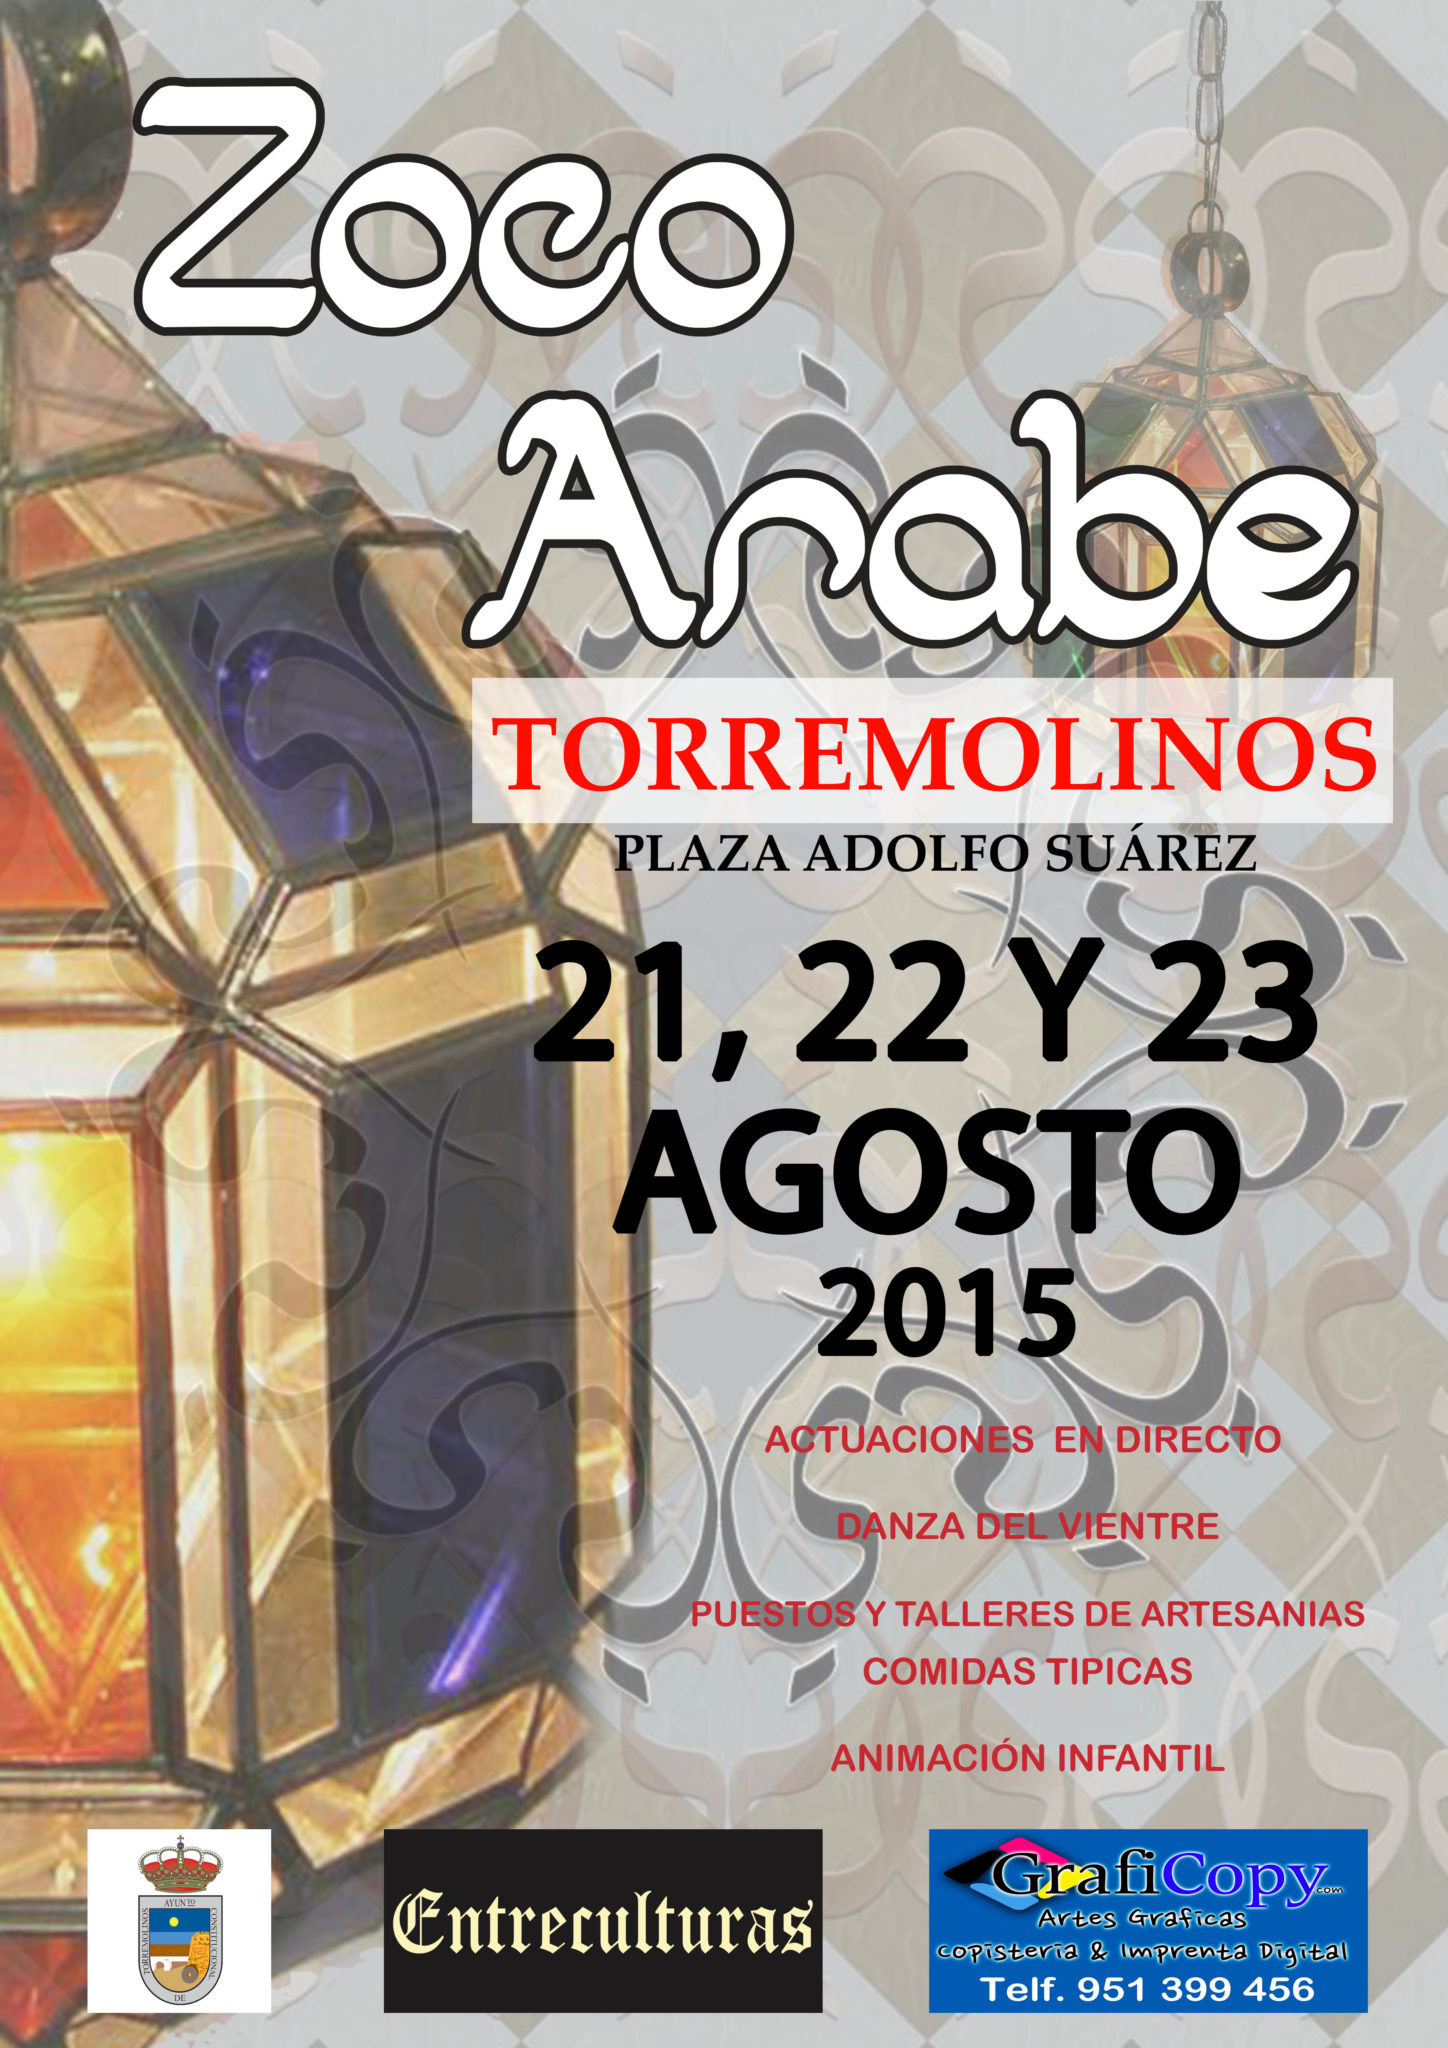 Zoco arabe en Torremolinos, Malaga 21 al 23 de Agosto del 2015